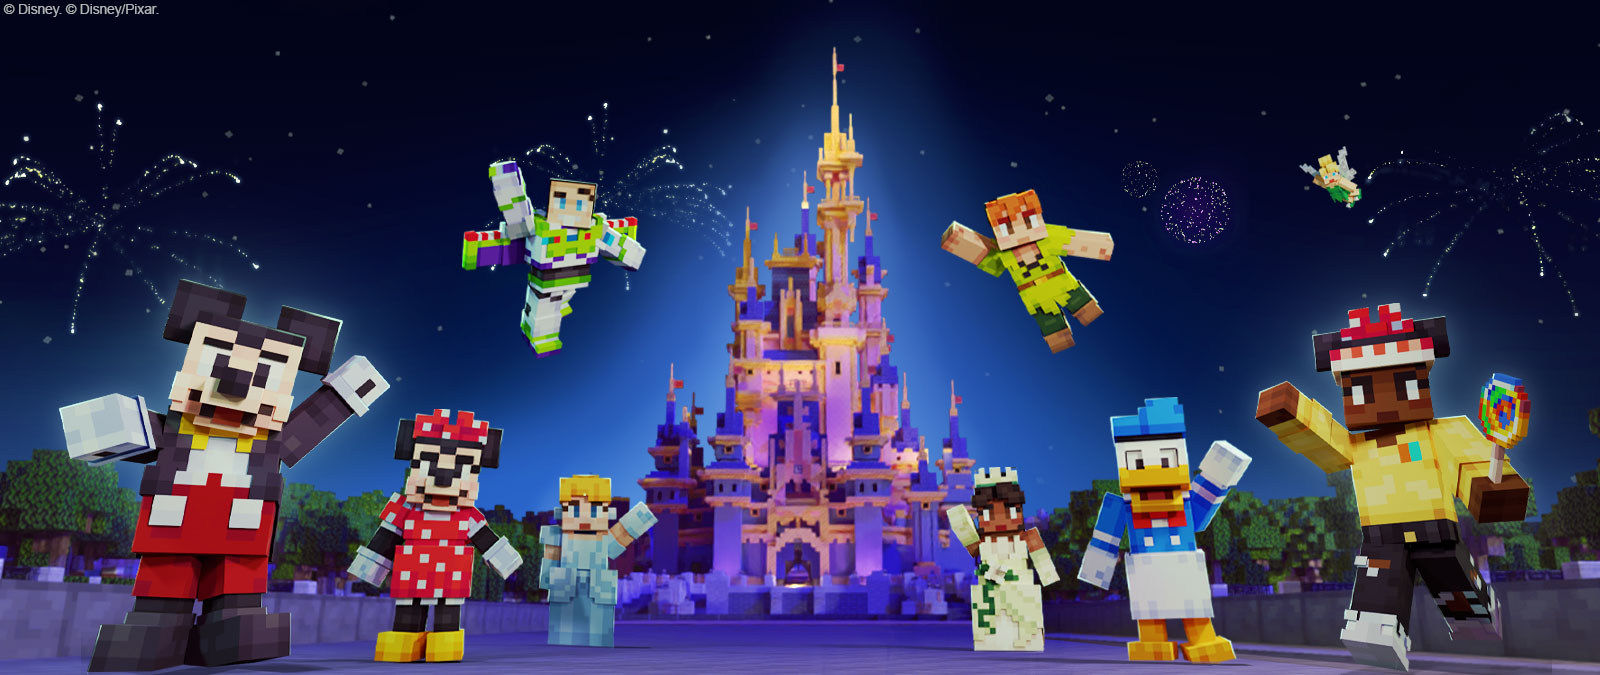 Οι Mickey Mouse, Minnie Mouse, Buzz Lightyear, Cinderella, Peter Pan, Tiana, Donald Duck, Tinkerbell και άλλος ένας χαρακτήρας σε στυλ Minecraft μπροστά από του κάστρο του Disney